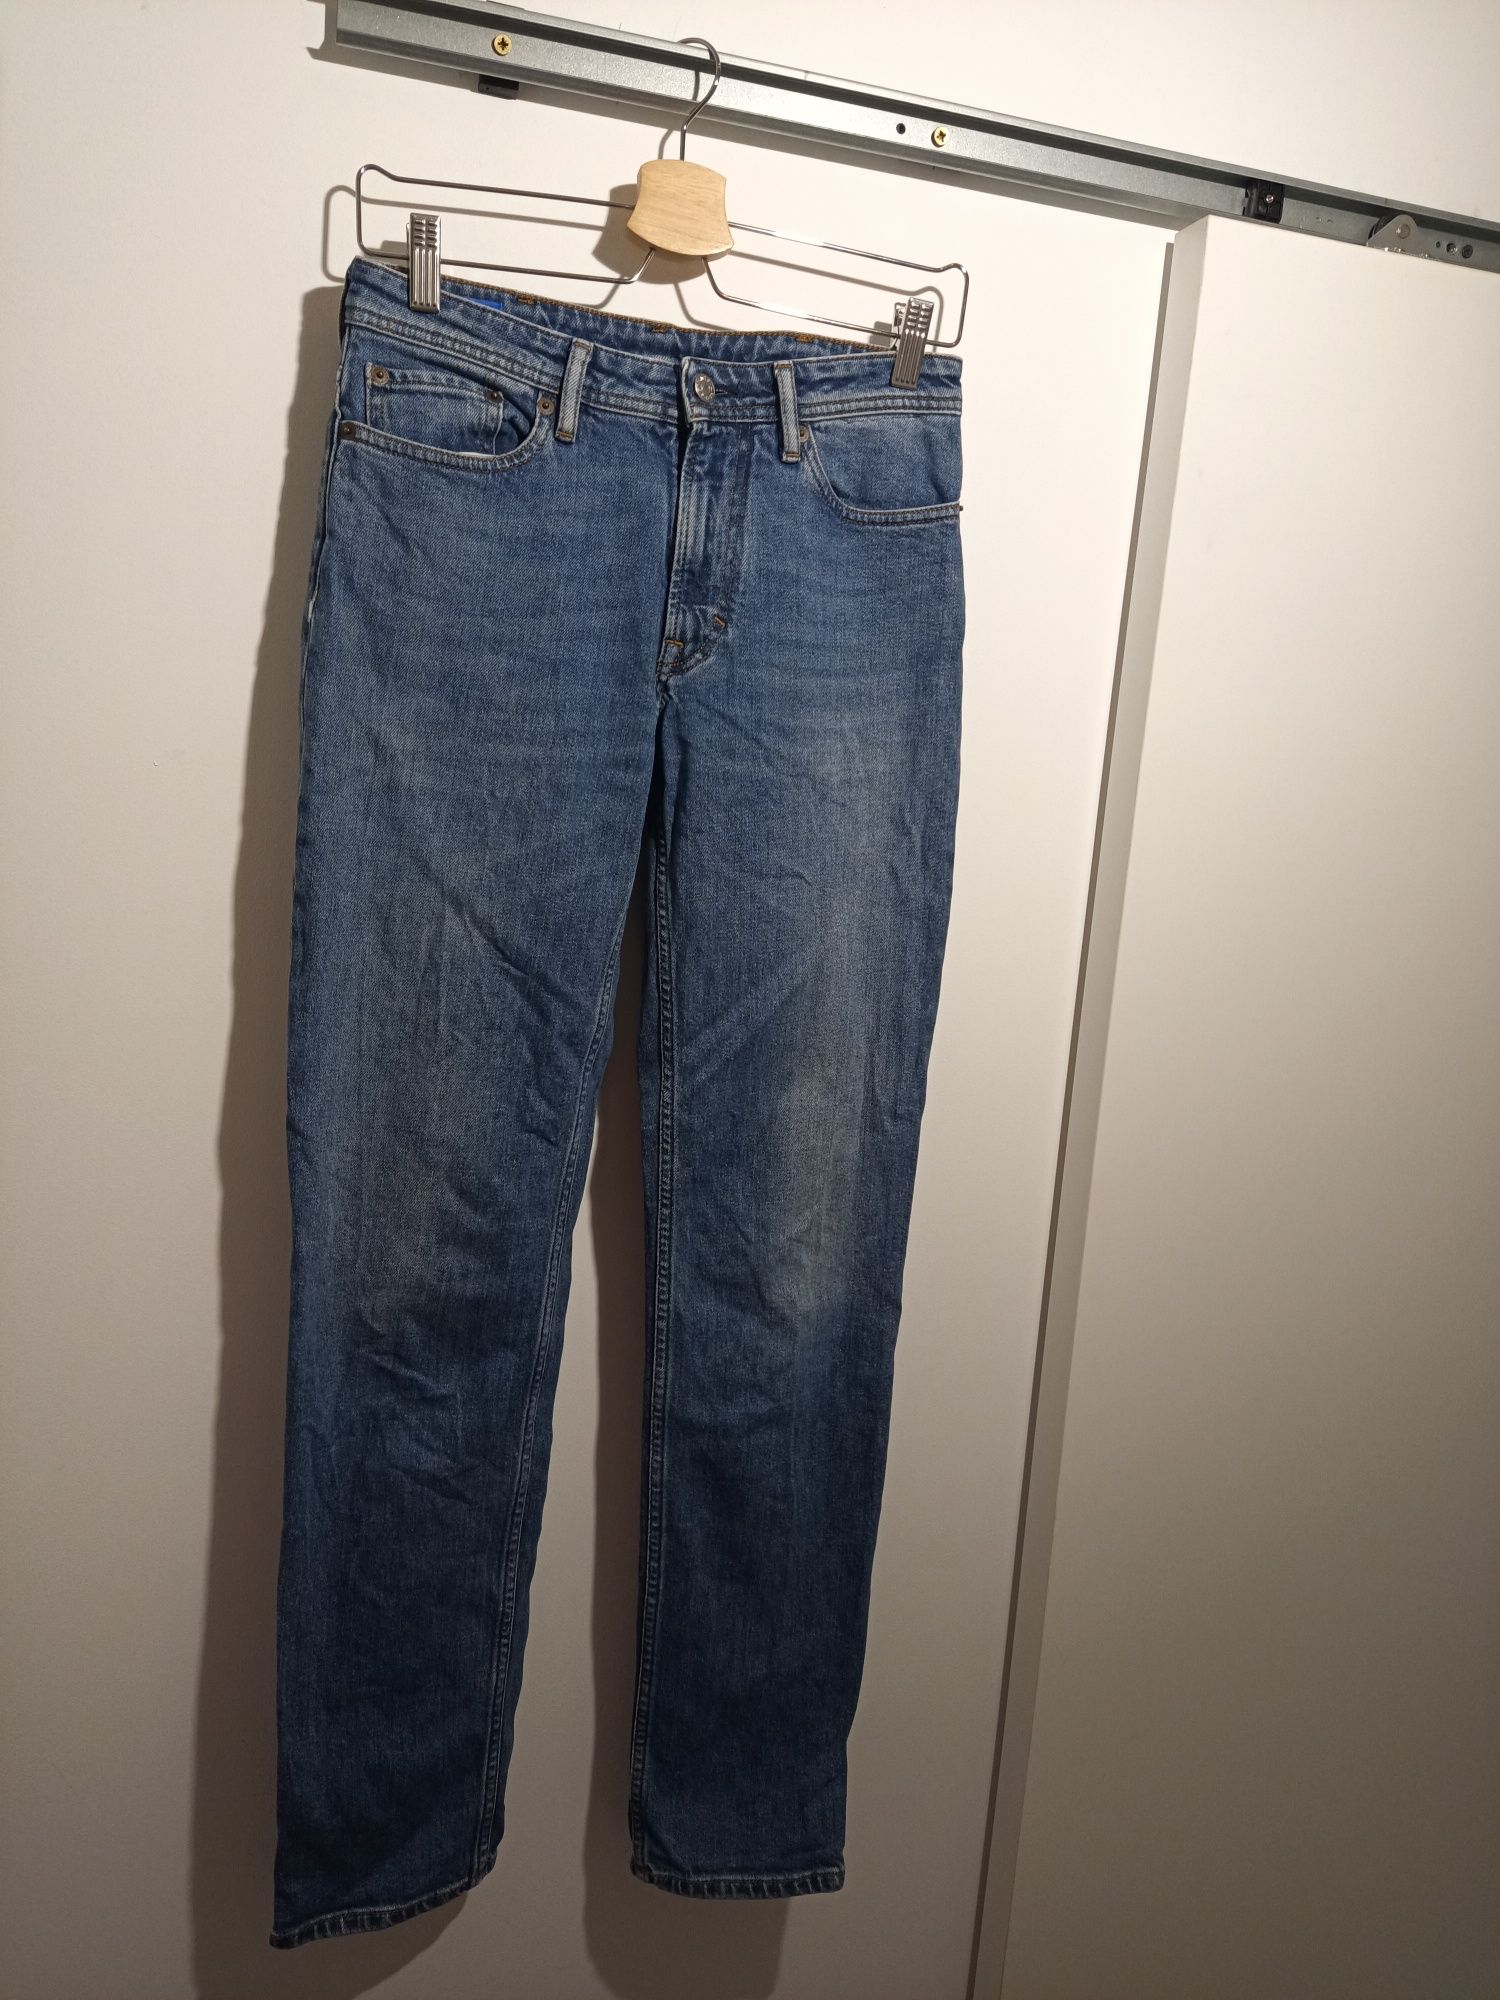 Acne Studios spodnie dżinsowe męskie